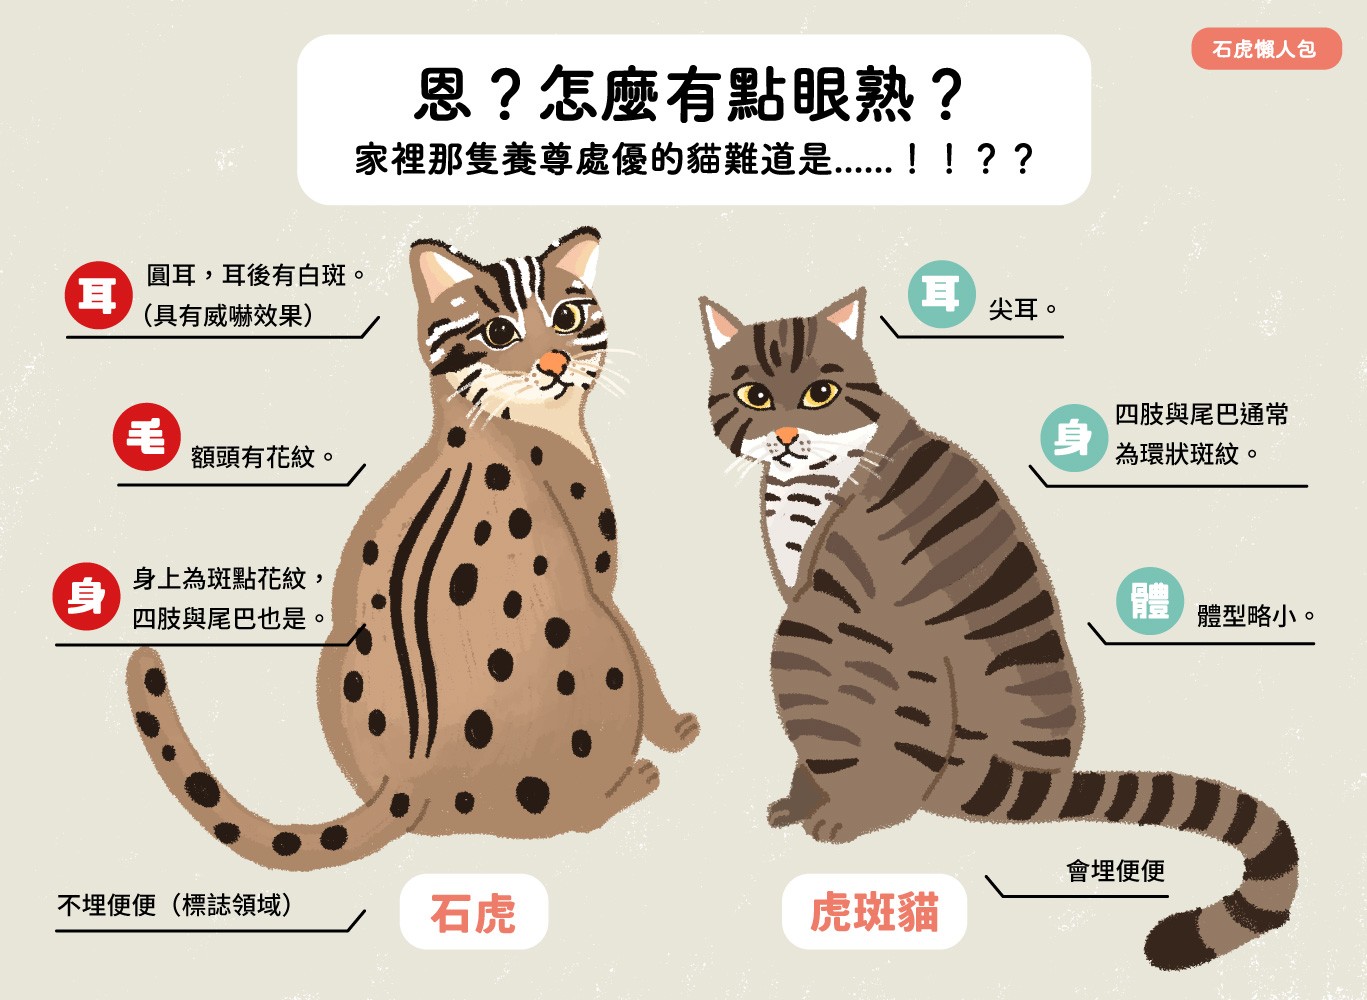 石虎是臺灣最後的貓科動物 認識物種與威脅現況 窩窩 為牠發聲